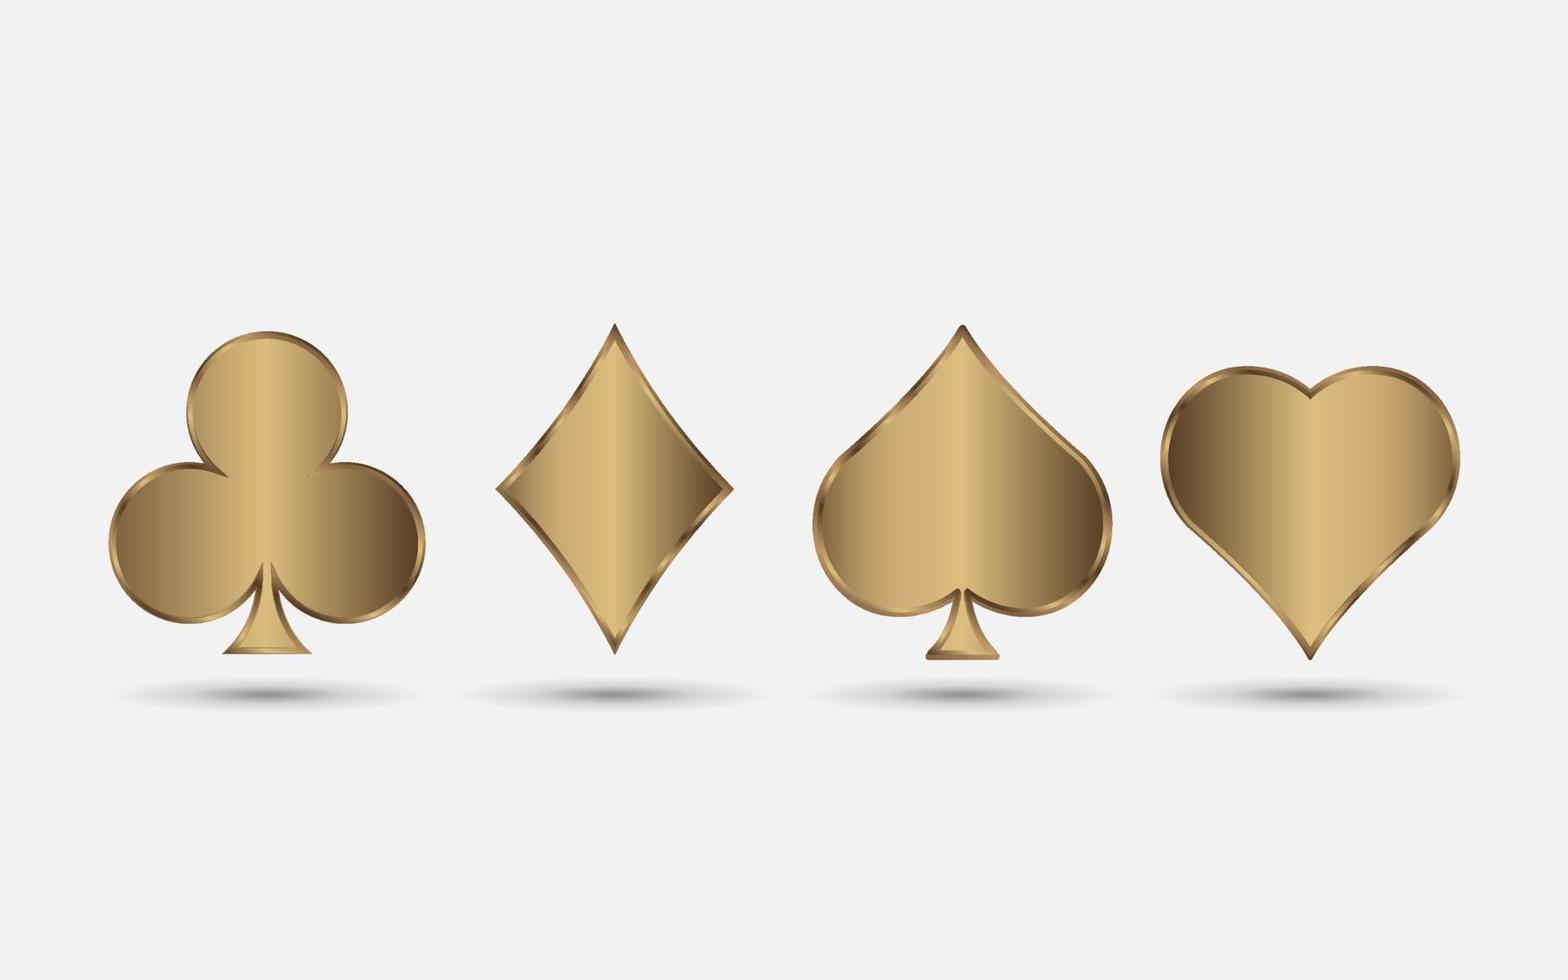 juegos de naipes de oro, pala, corazón, club y vector de diamantes para su diseño o logotipo. cartas de mazo realistas aisladas sobre fondo blanco